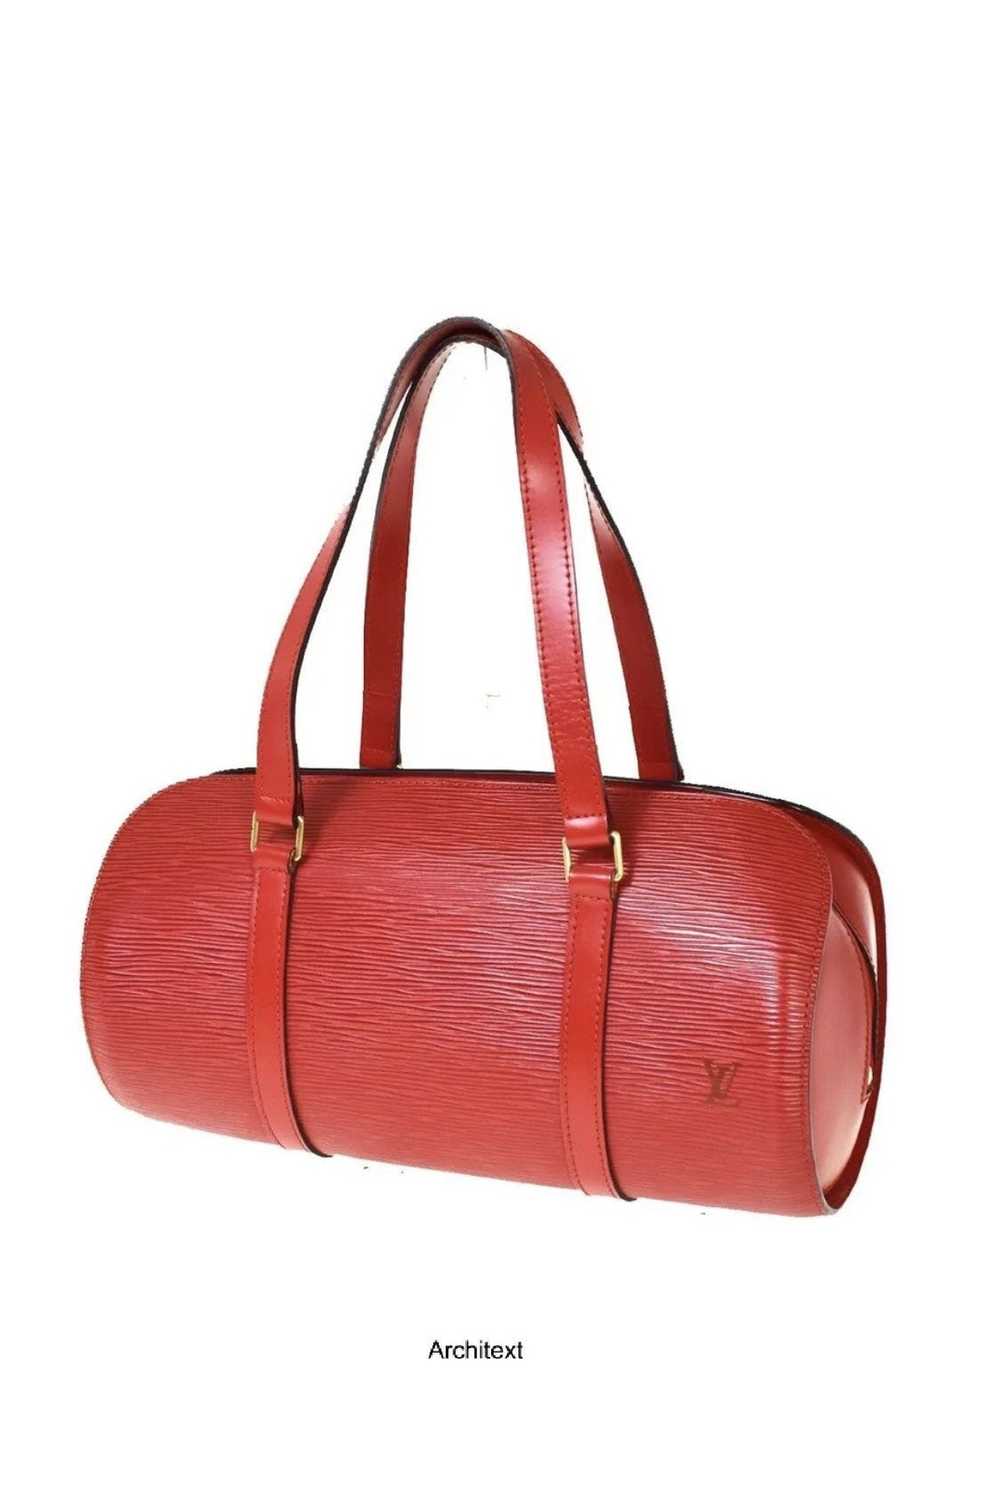 Louis Vuitton Epi Monceau 2Way Hand Bag Briefcase Black M52122 LV